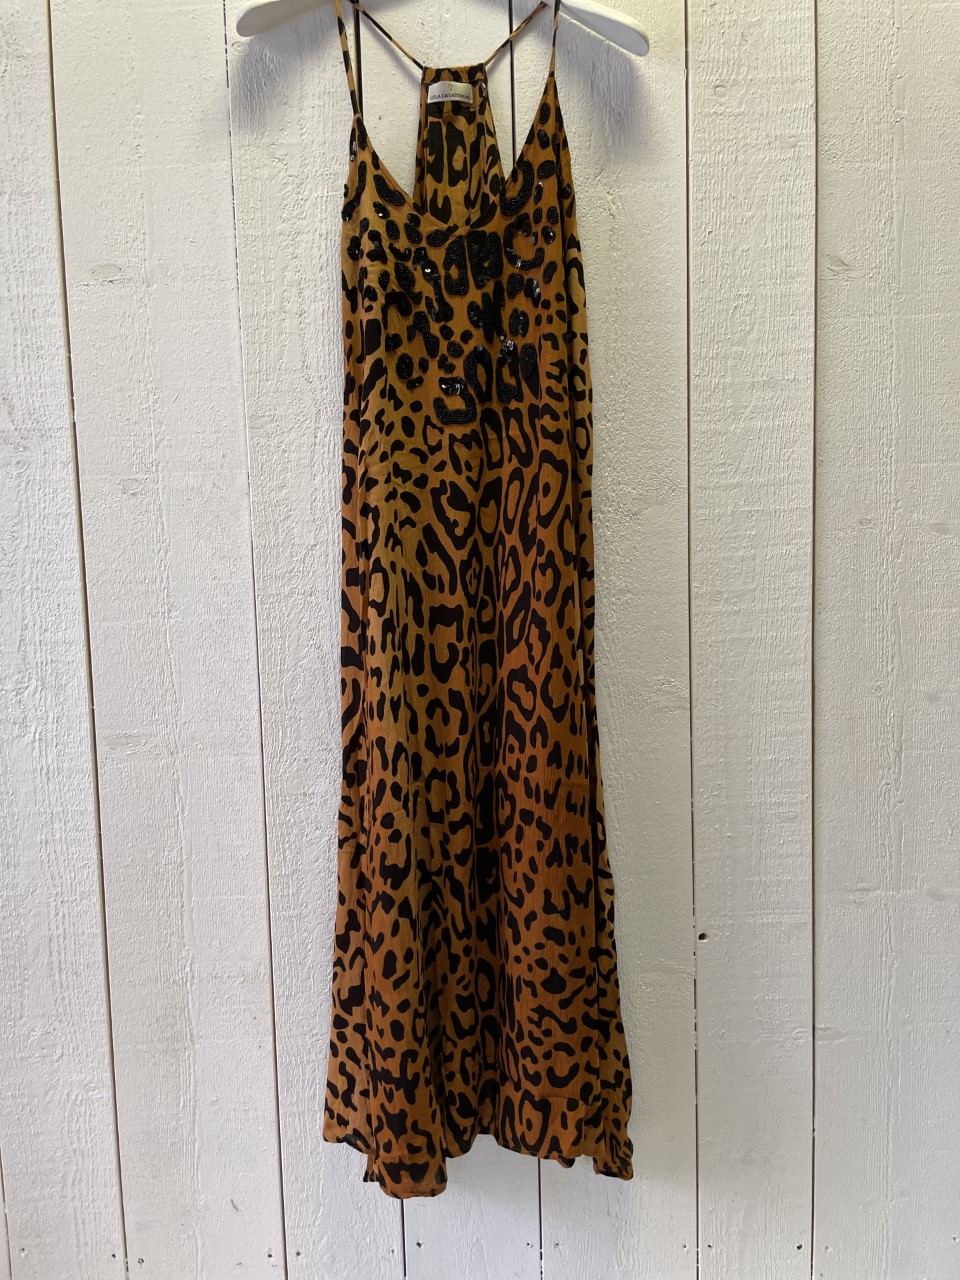 LOLA CASADEMUNT  " Leopard klänning " Smala axelband